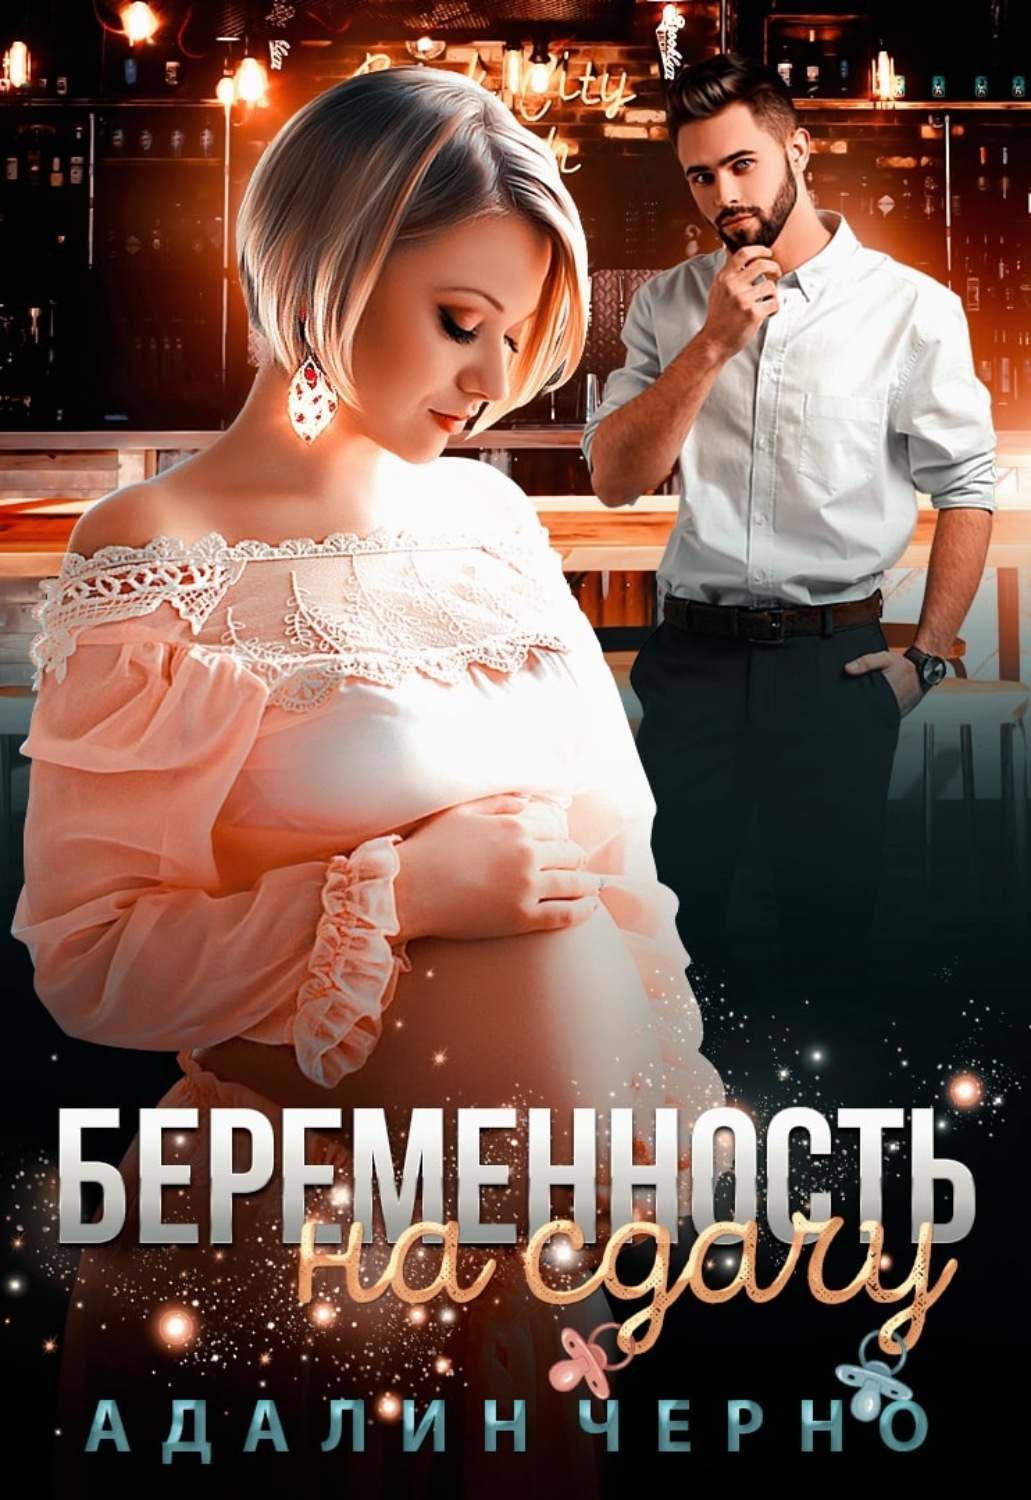 Книга про беременность читать. Адалин черно. Романы про беременную героиню. Романы про беременных героинь.